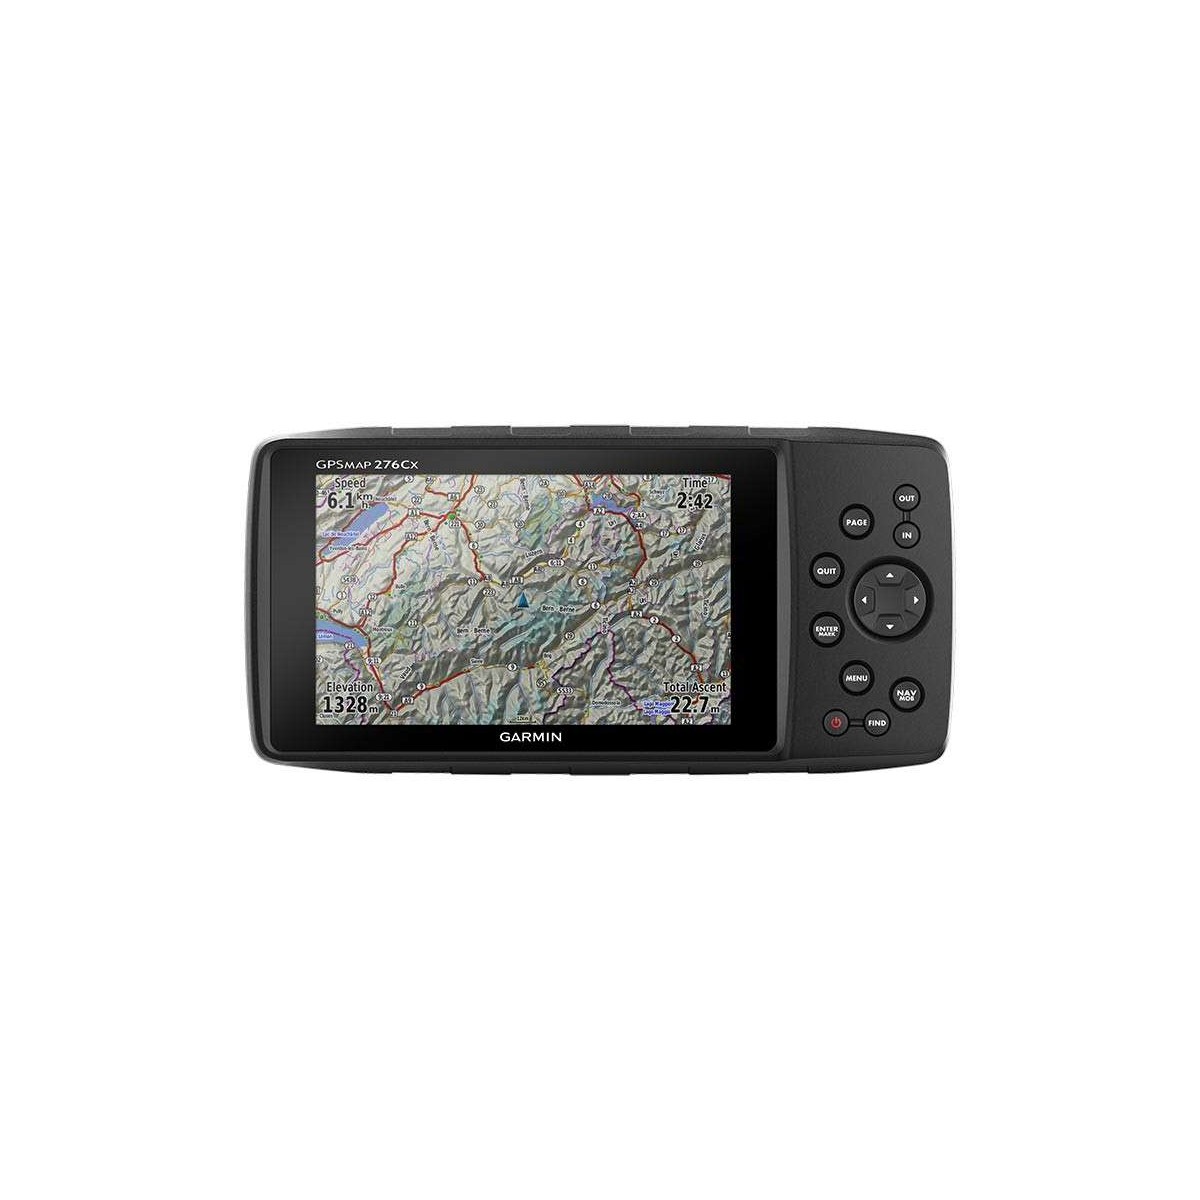 GPS portable GPSMAP 276Cx - face - carte